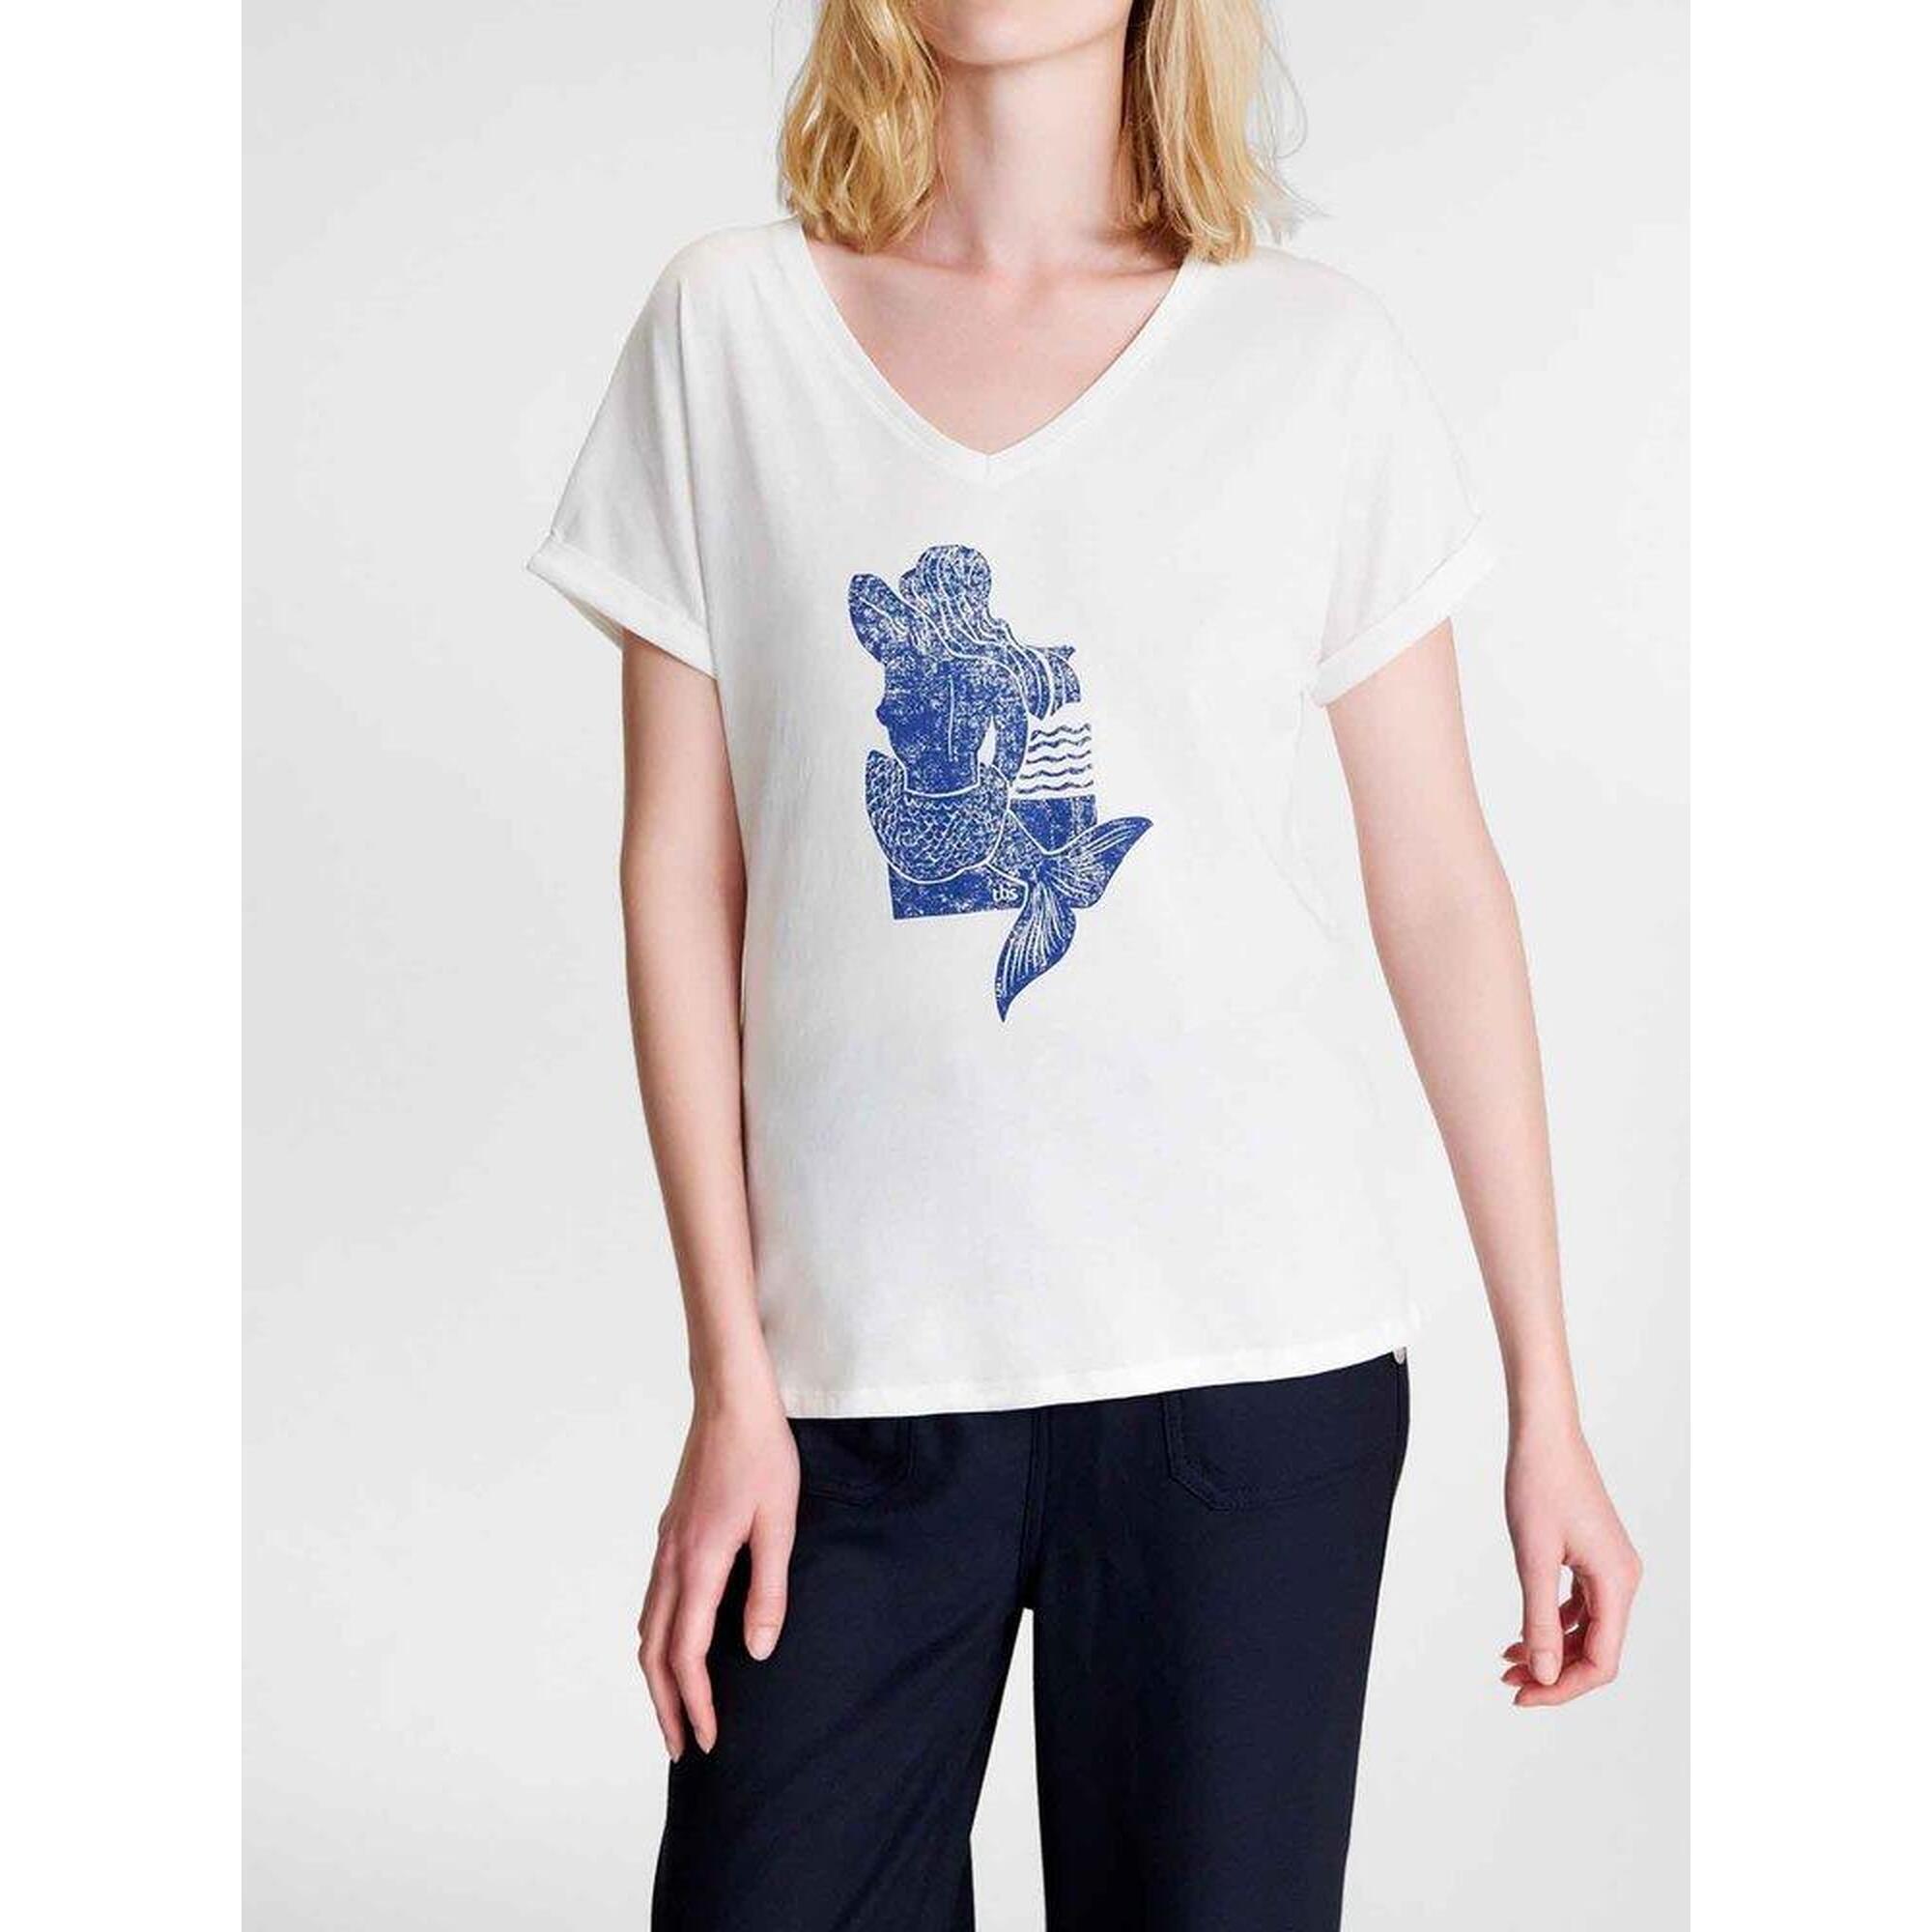 T-shirt manches courtes Femme - PIANATEE Arctique